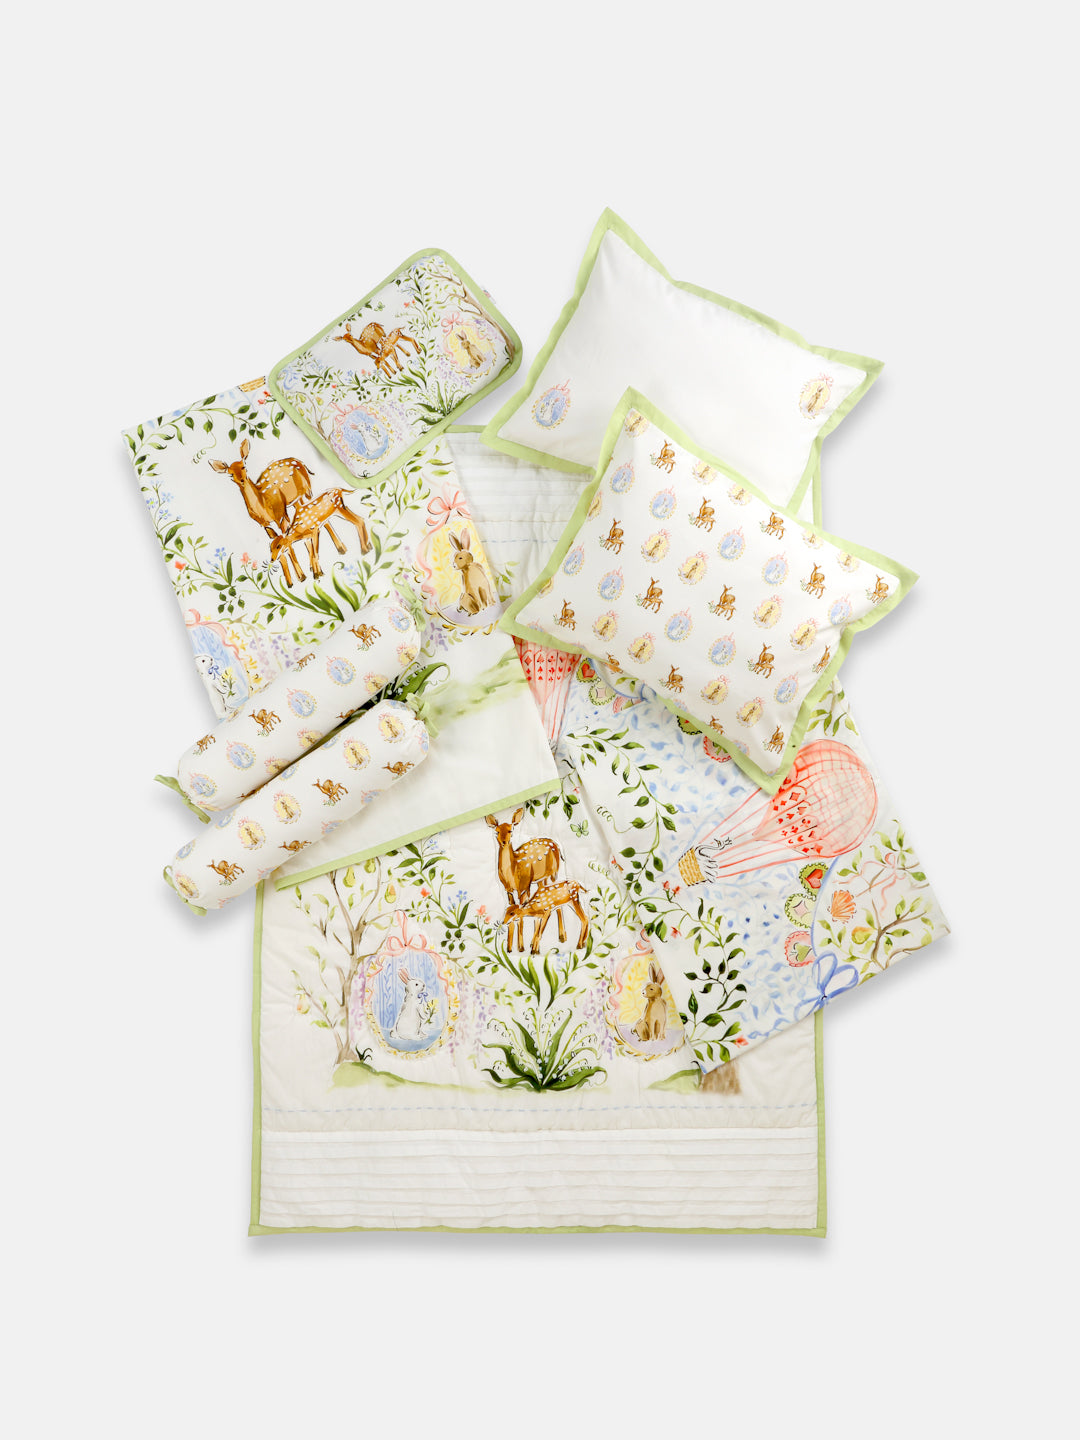 quilt & Bedding Set - Pack of 5 (Enchanted Deer)